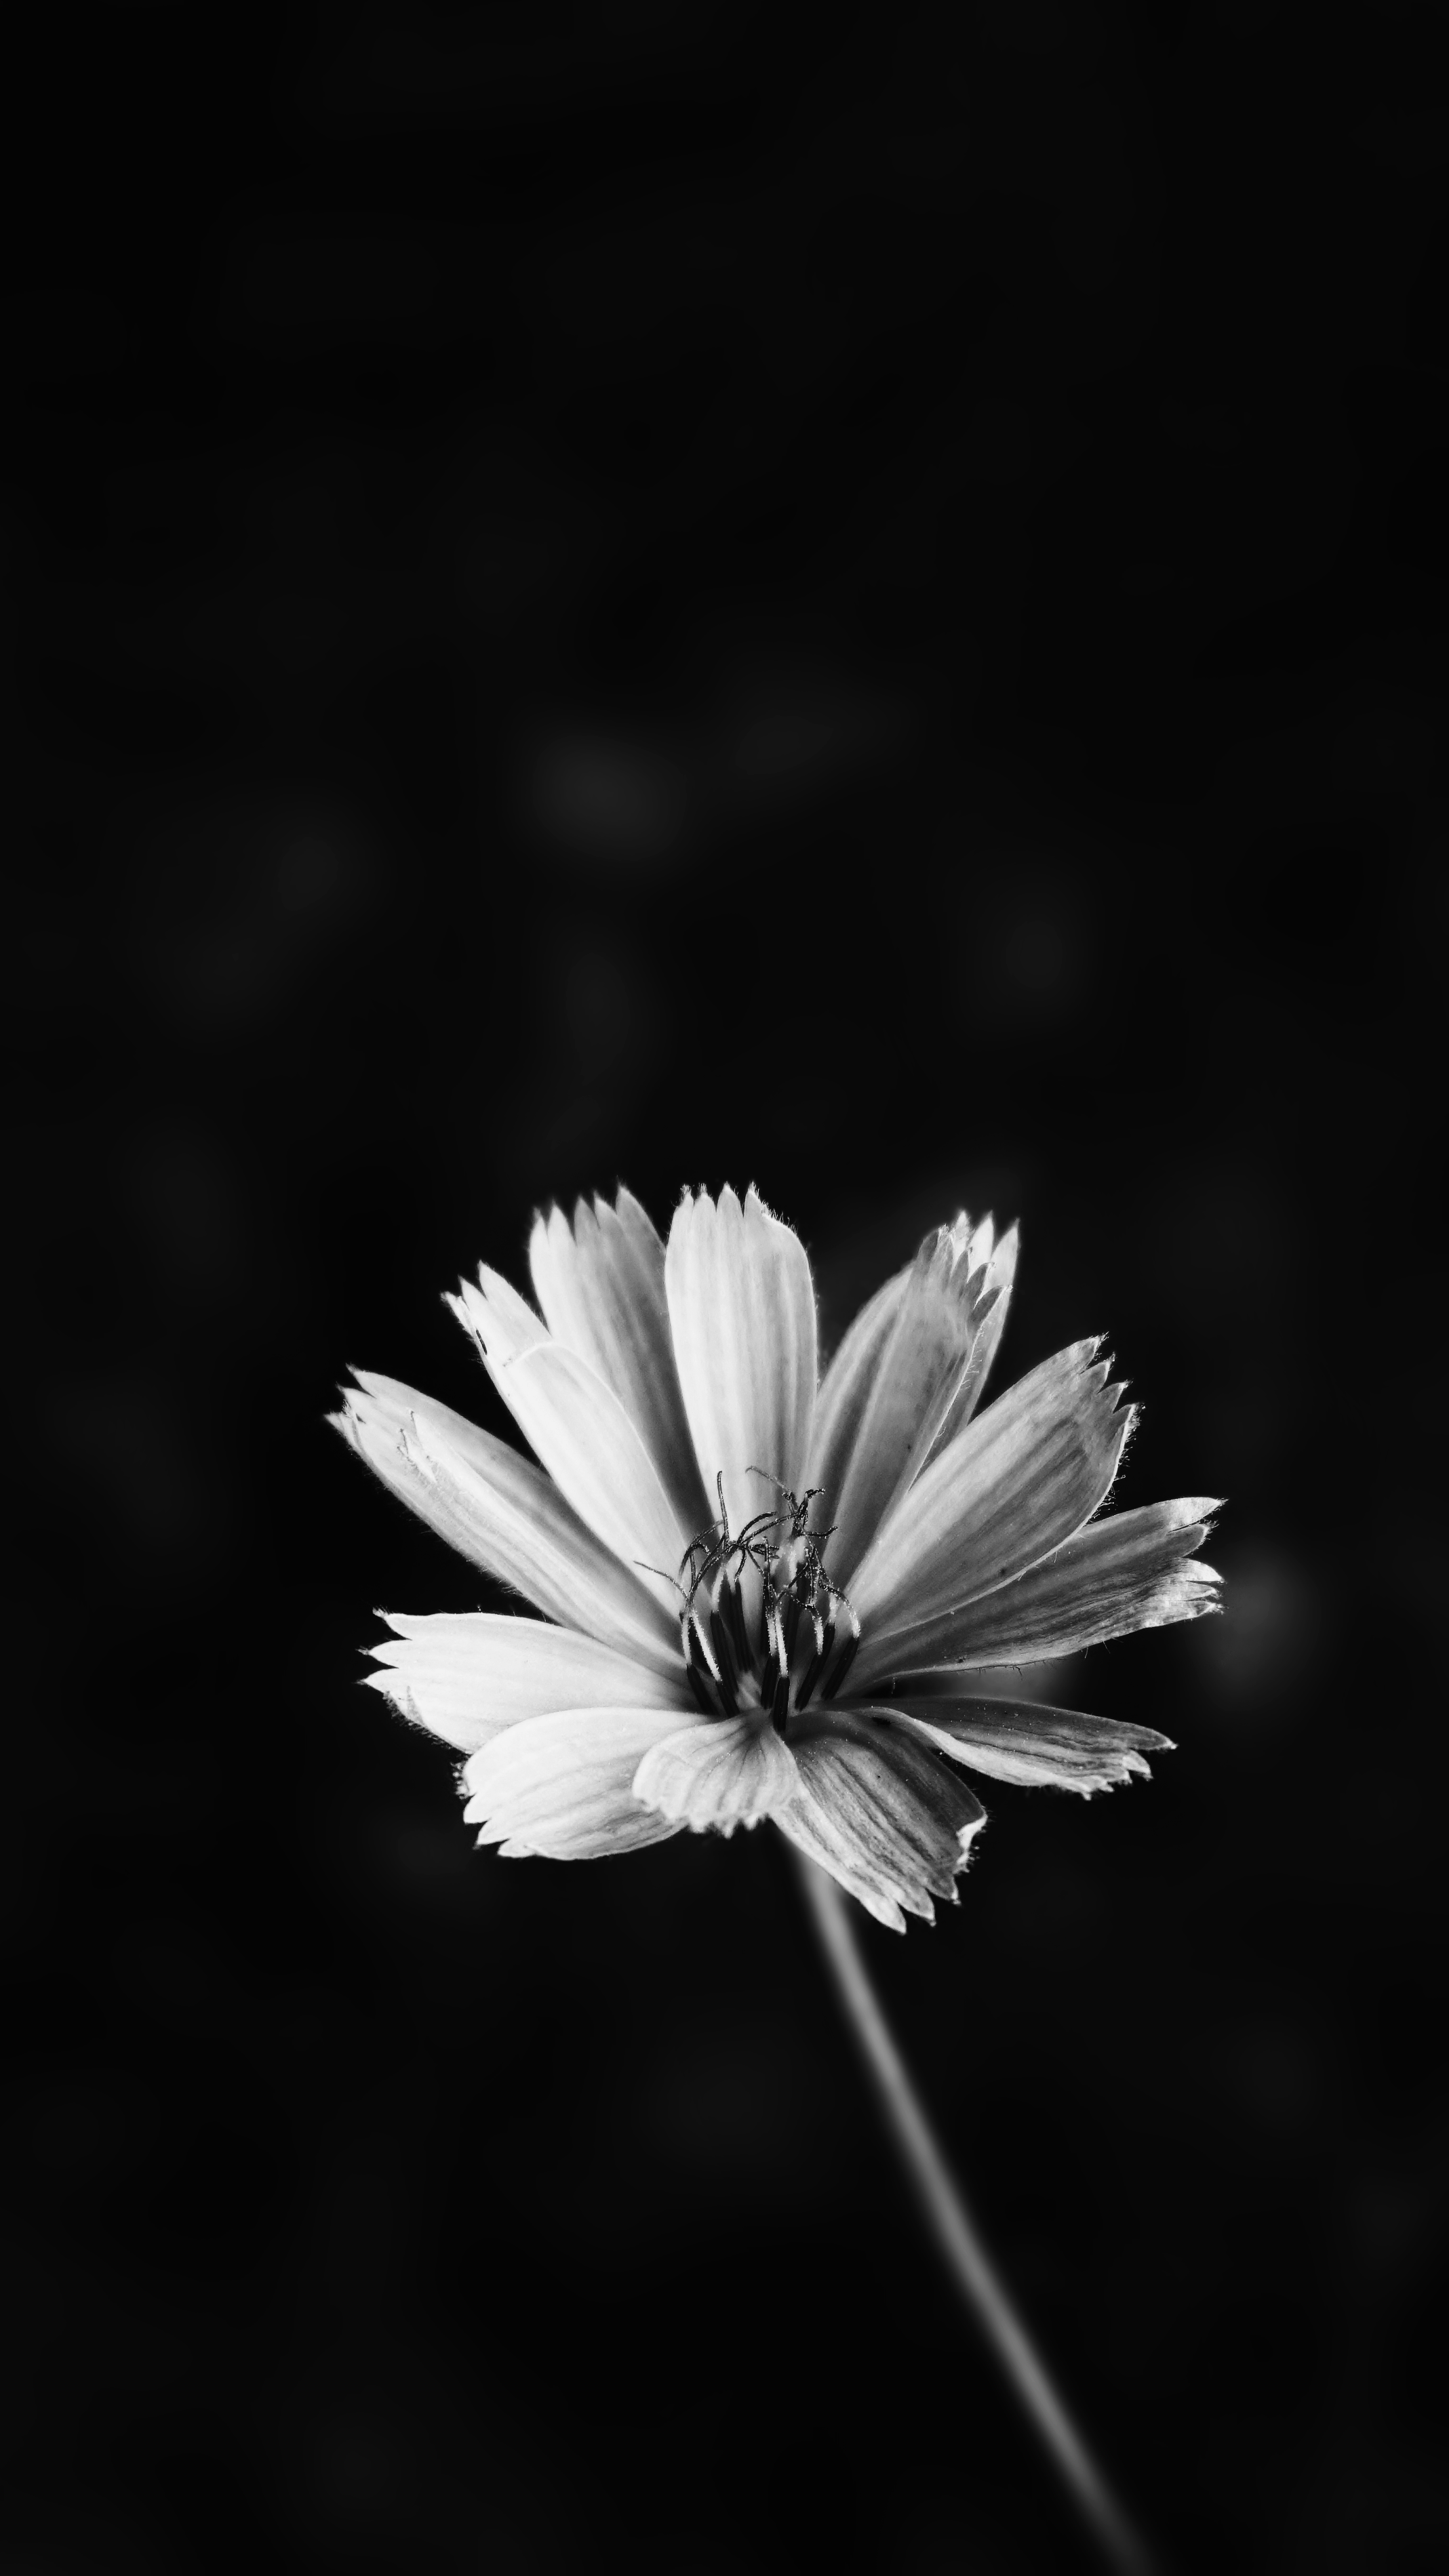 foto hintergrundbild,blütenblatt,monochrome fotografie,schwarz und weiß,blume,natur